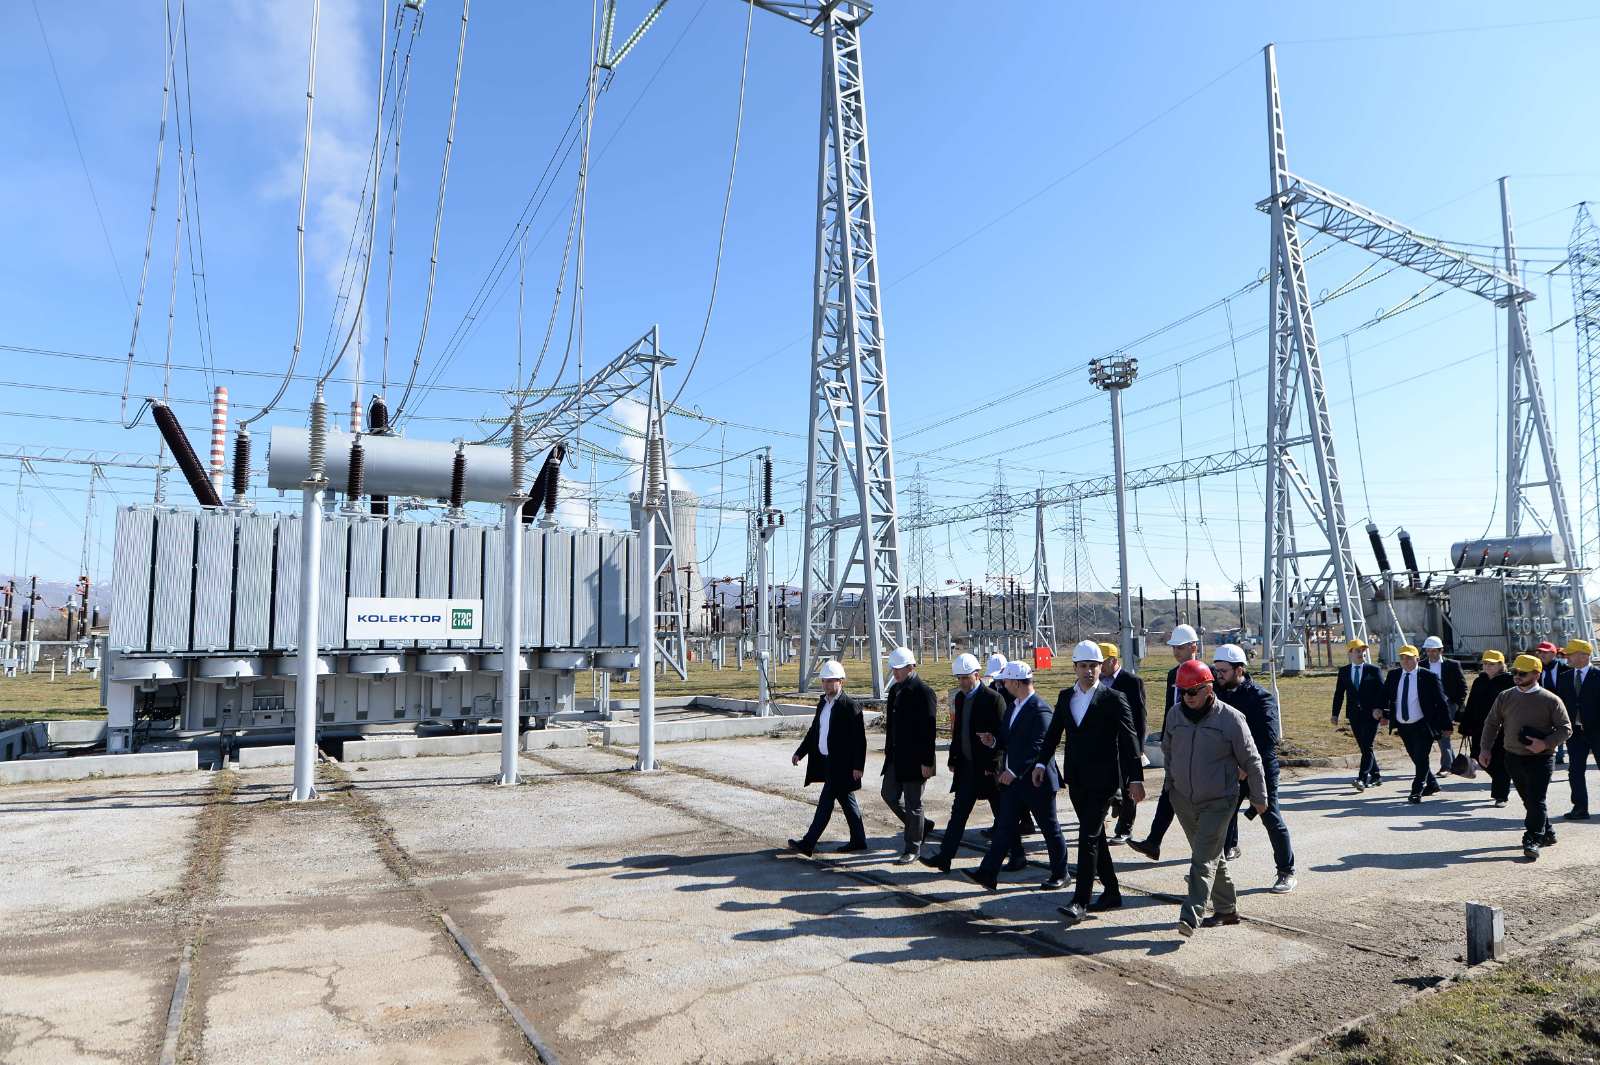 Регионот добива нова електроенергетска крстосница, започна изградбата на 400 kV  далекувод Битола -Елбасан